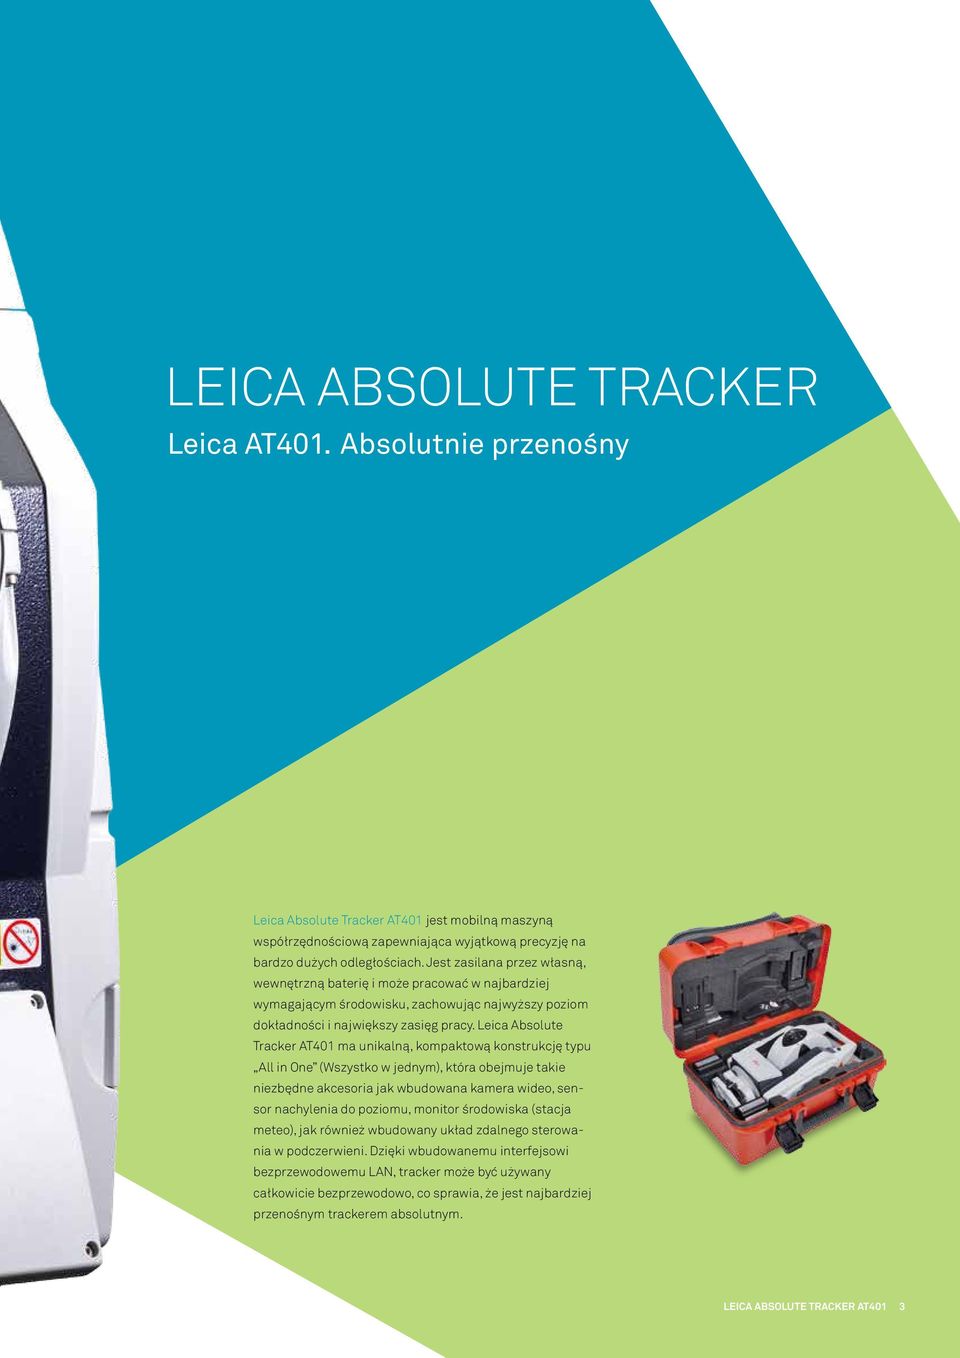 Leica Absolute Tracker AT401 ma unikalną, kompaktową konstrukcję typu All in One (Wszystko w jednym), która obejmuje takie niezbędne akcesoria jak wbudowana kamera wideo, sensor nachylenia do